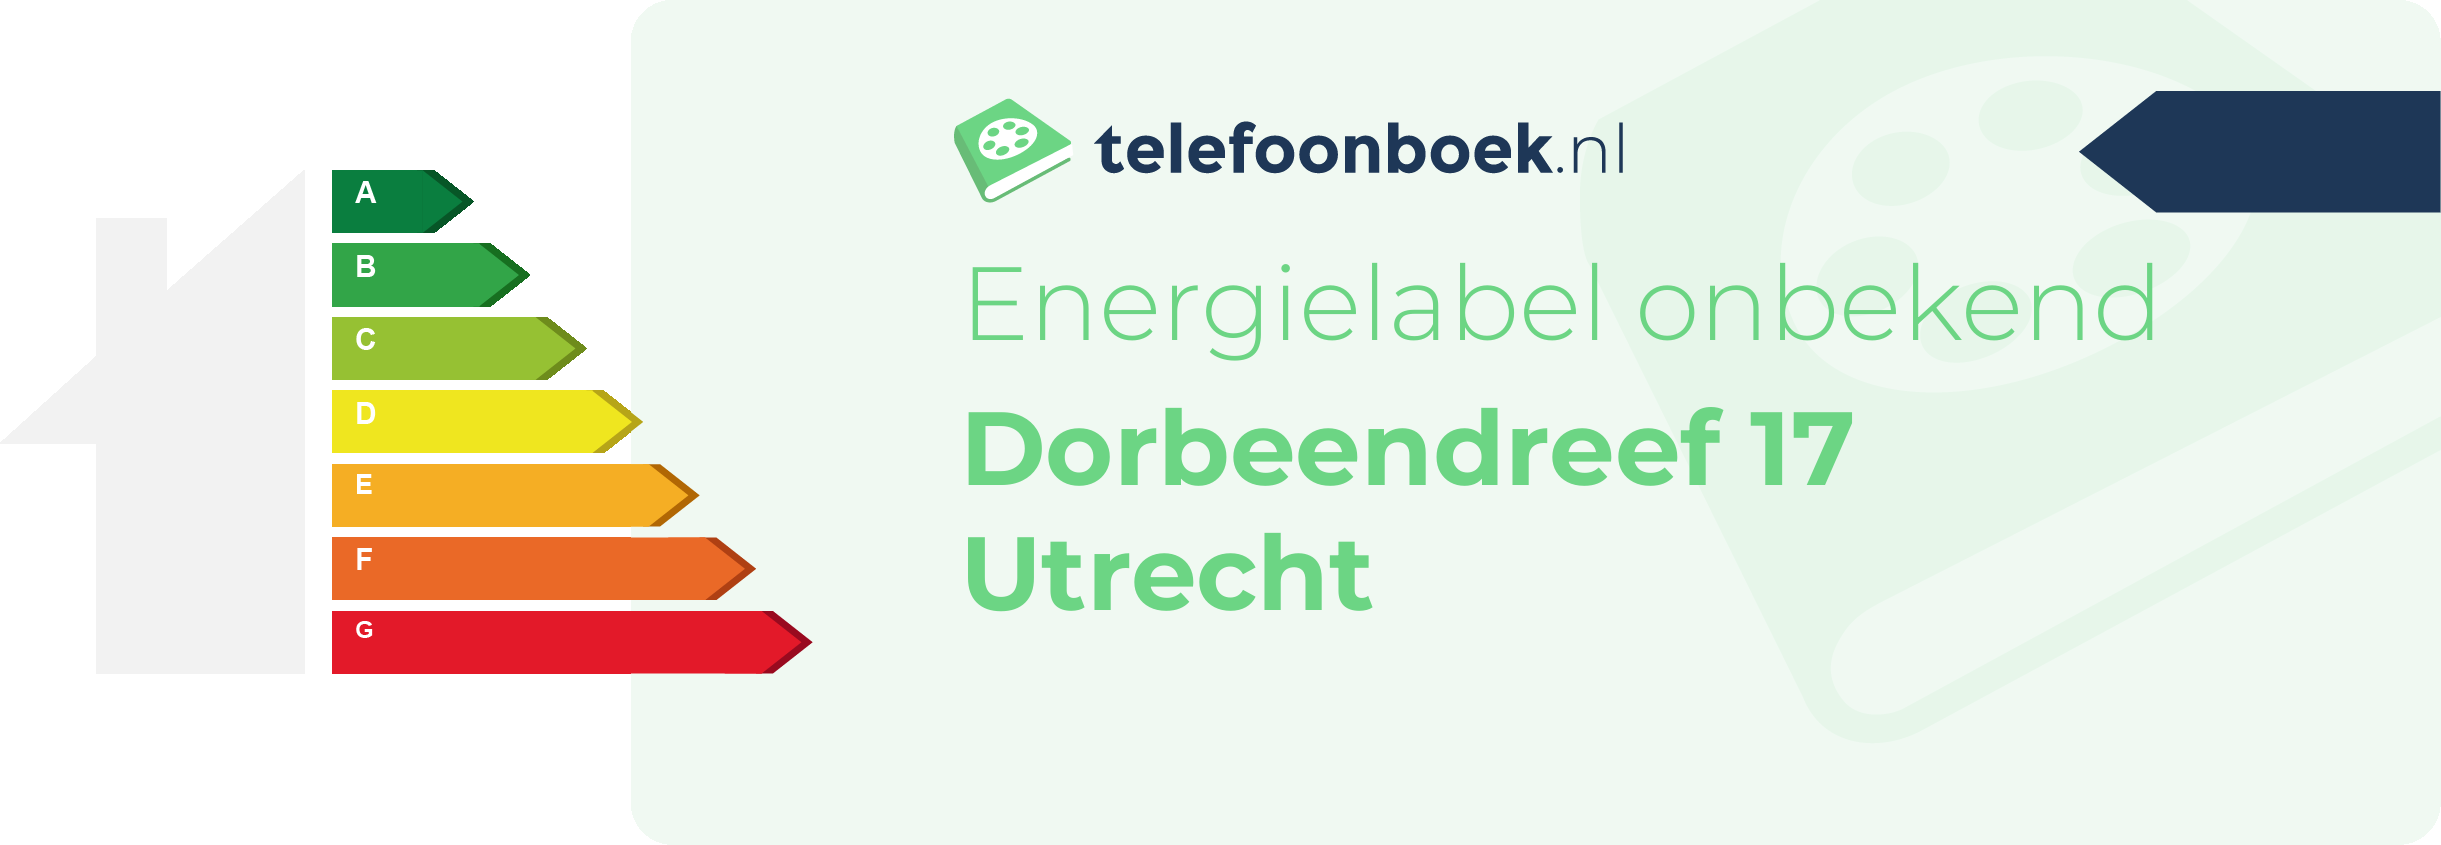 Energielabel Dorbeendreef 17 Utrecht